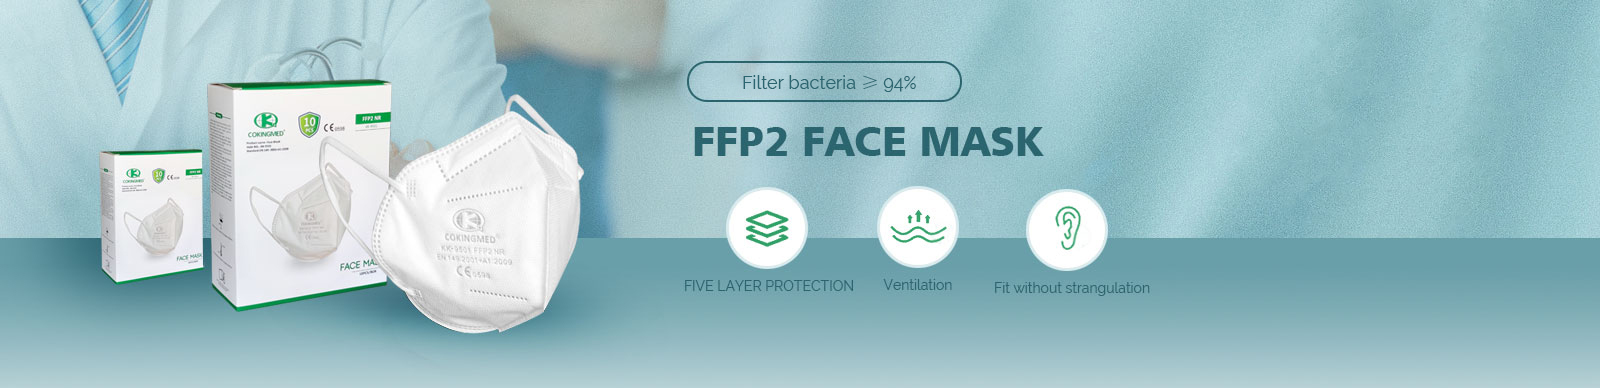 FFP2 FACE MASK